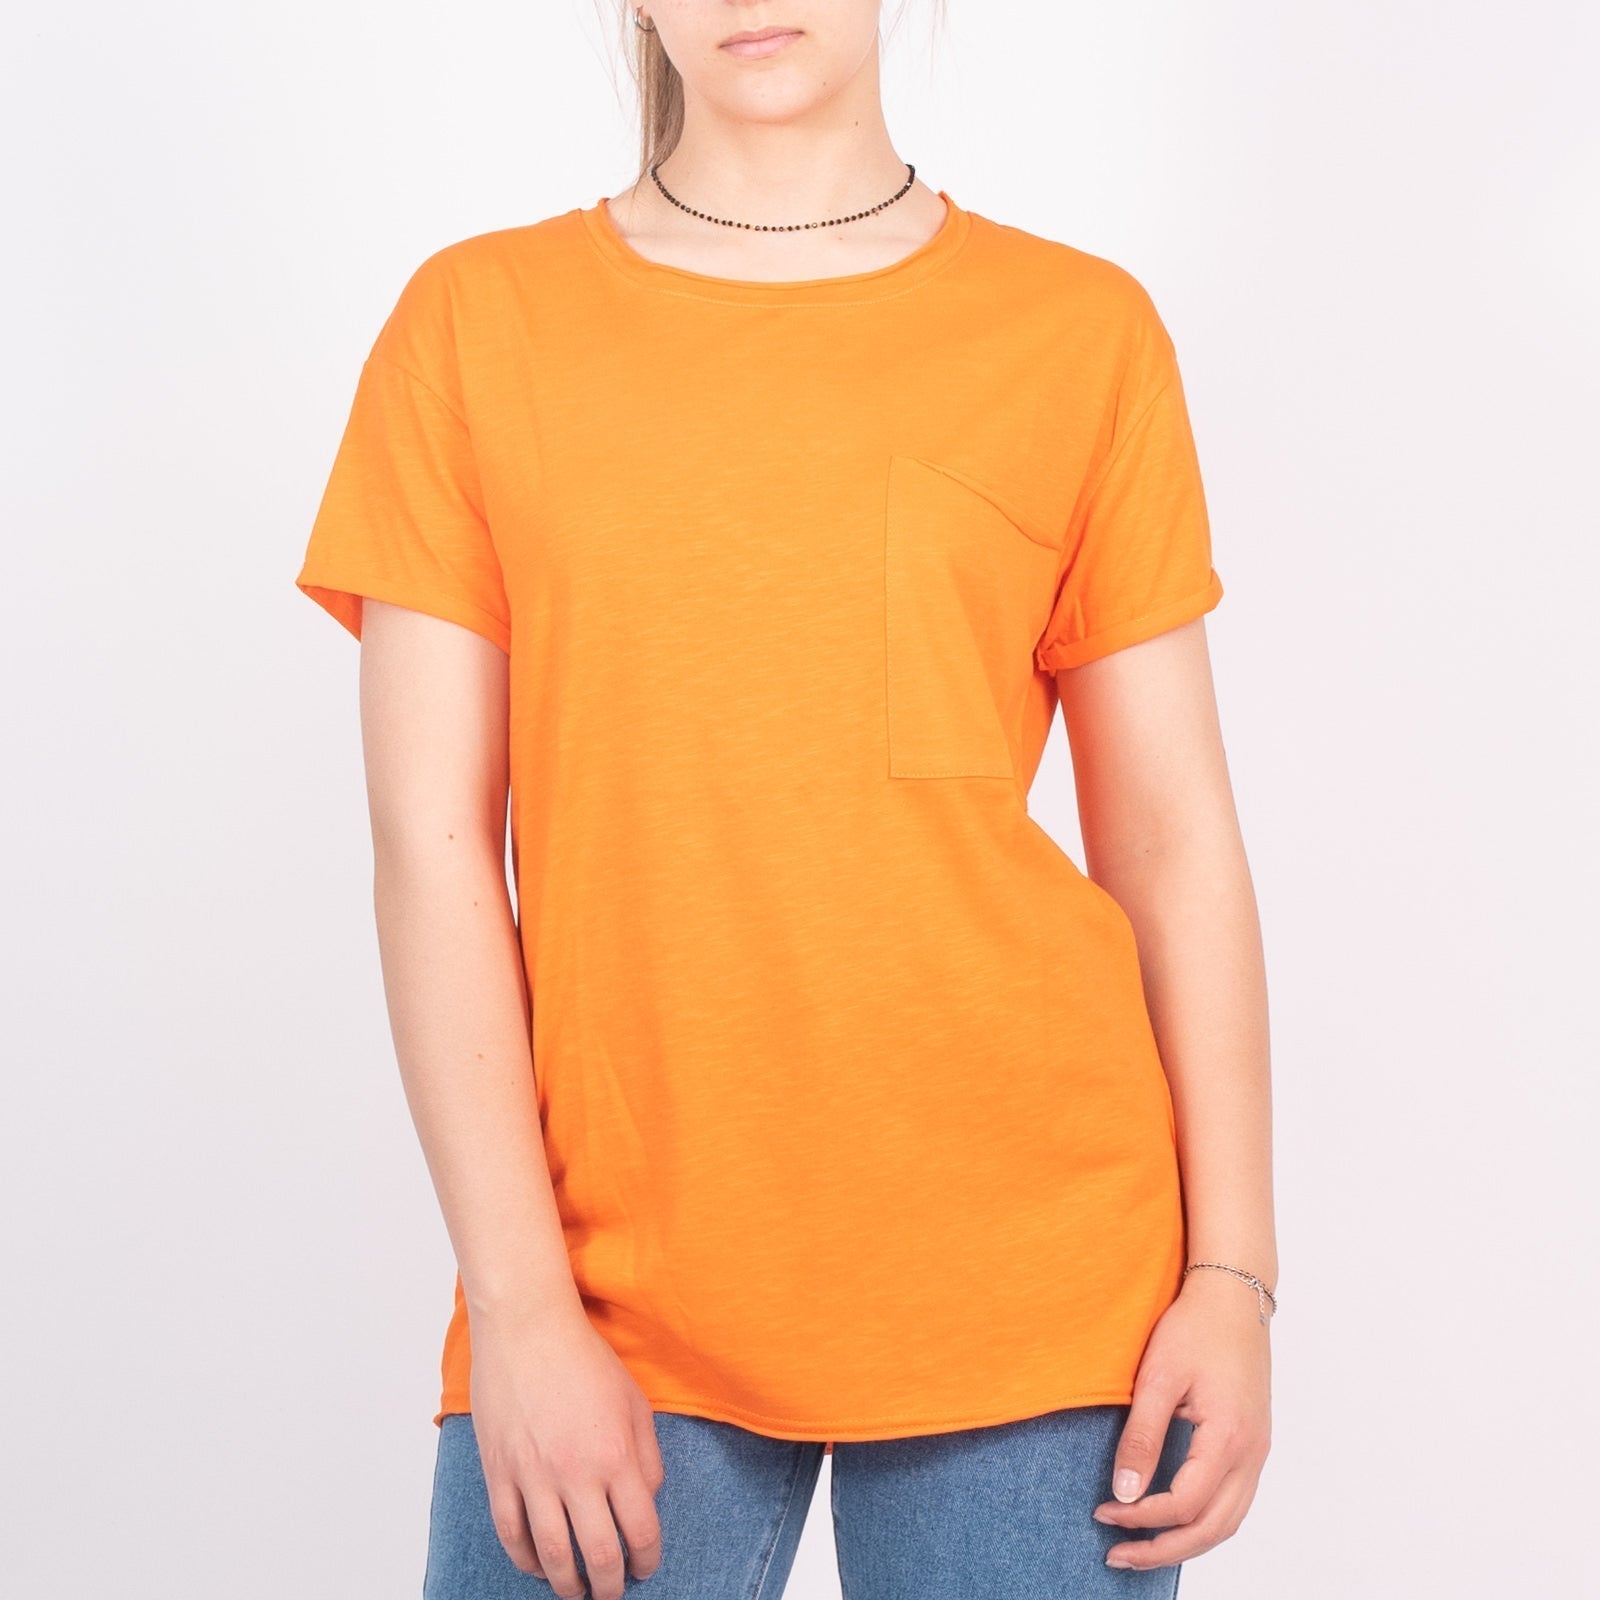 Μπλούζα Με Τσέπη Στο Στήθος Πορτοκαλί